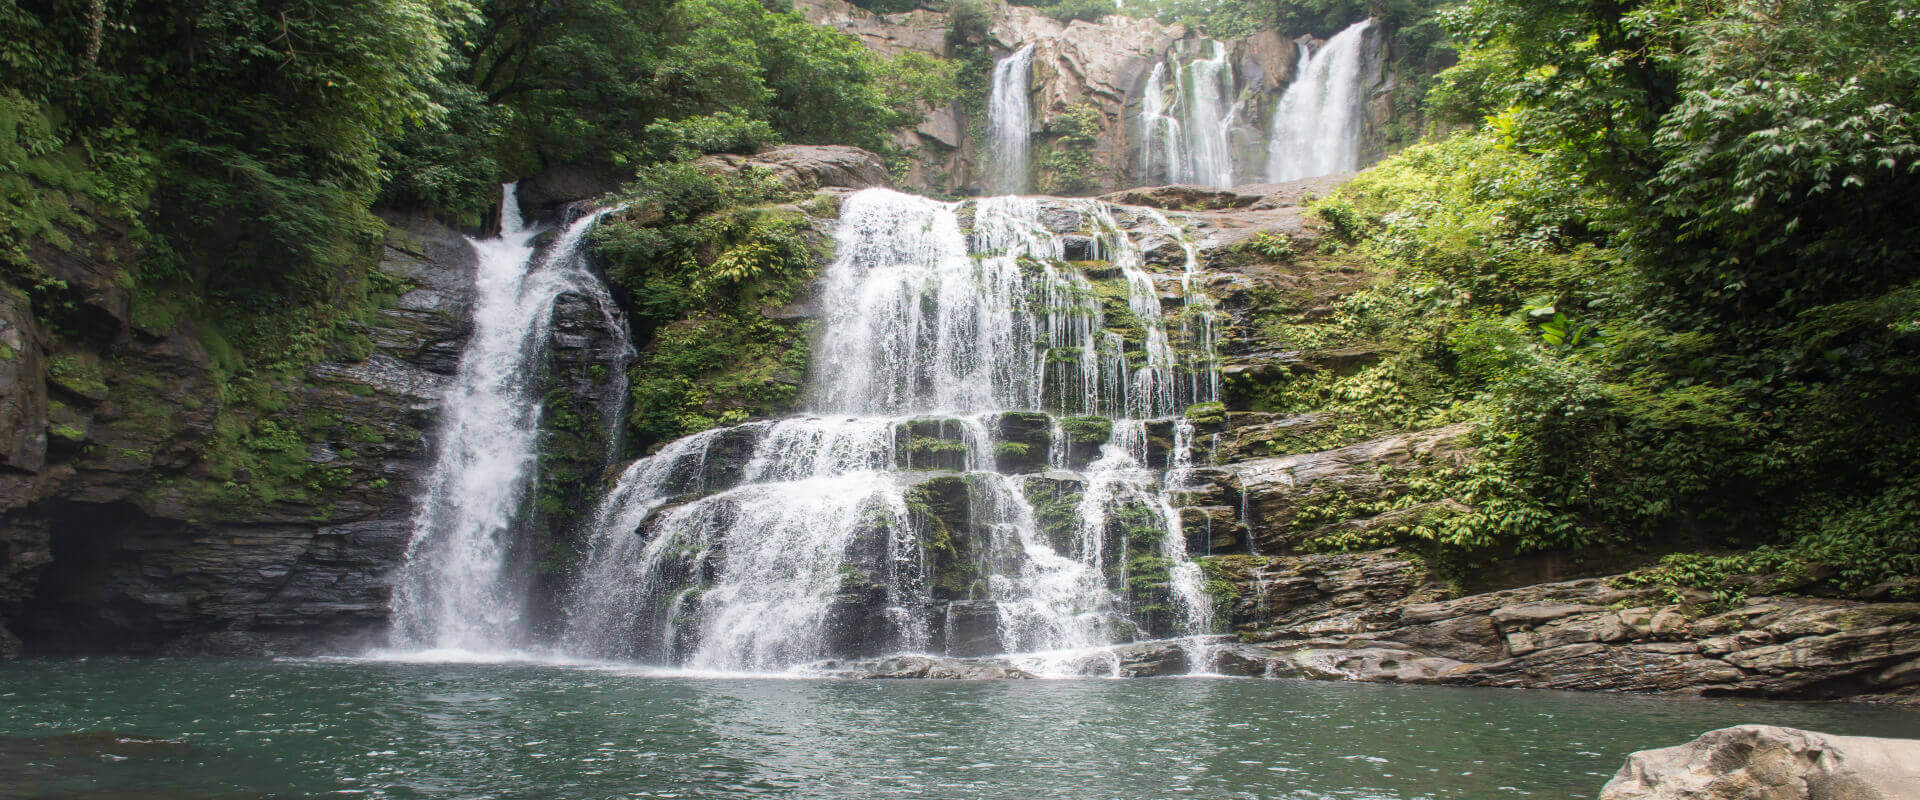 Experiencia de senderismo en las cataratas de Nauyaca | Costa Rica Jade Tours